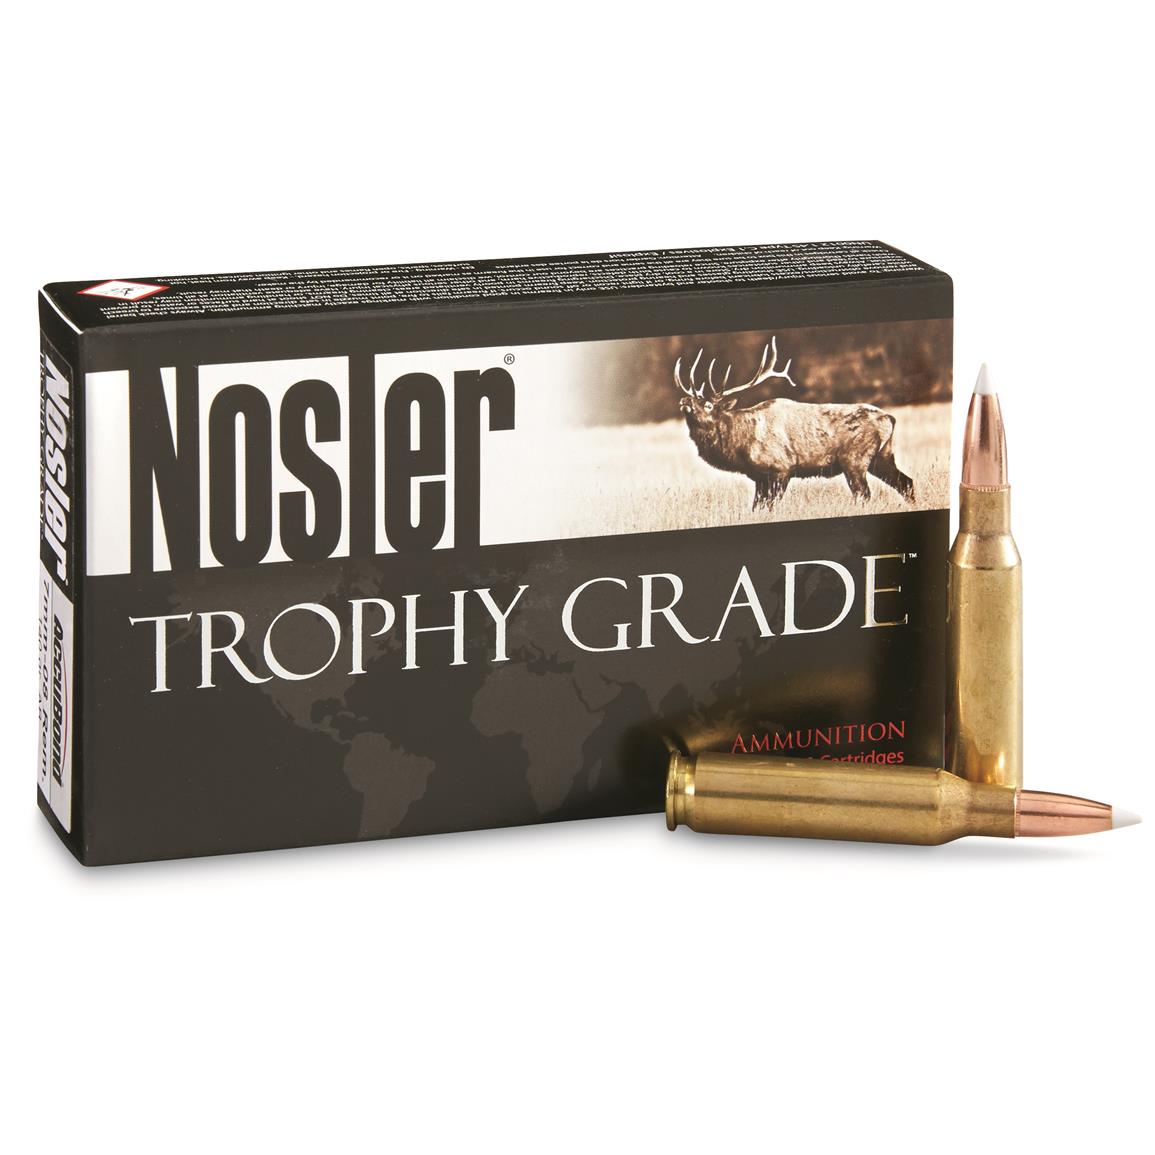 Nosler Trophy Grade, 7mm - 08 Rem, AB, 140 Grain, 20 Rounds